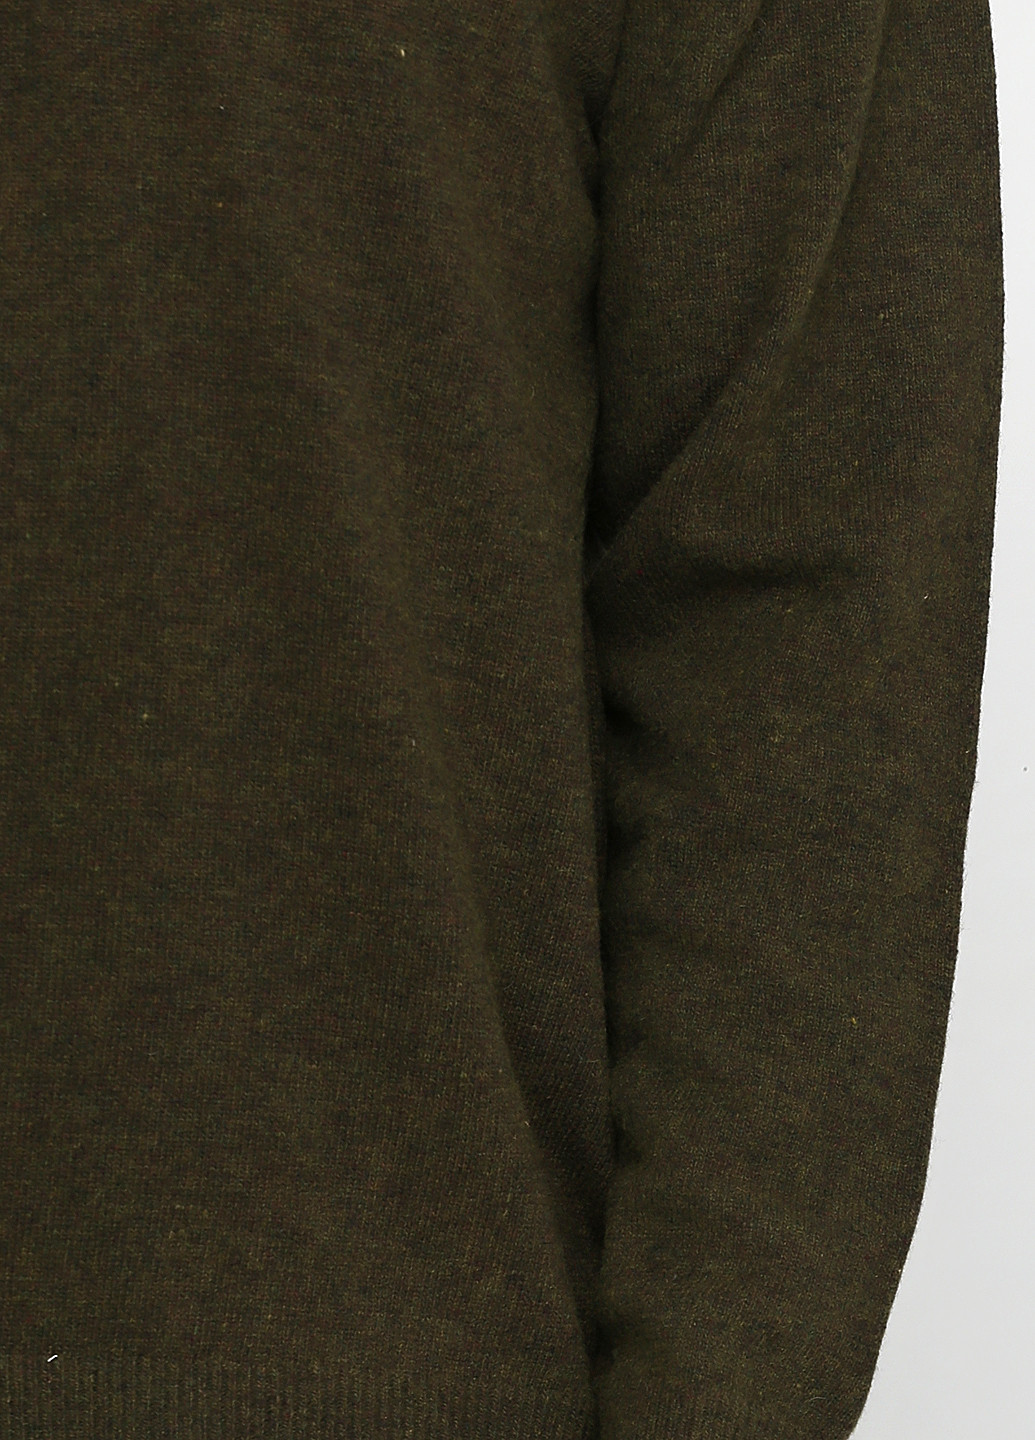 Оливковий демісезонний пуловер пуловер LENART